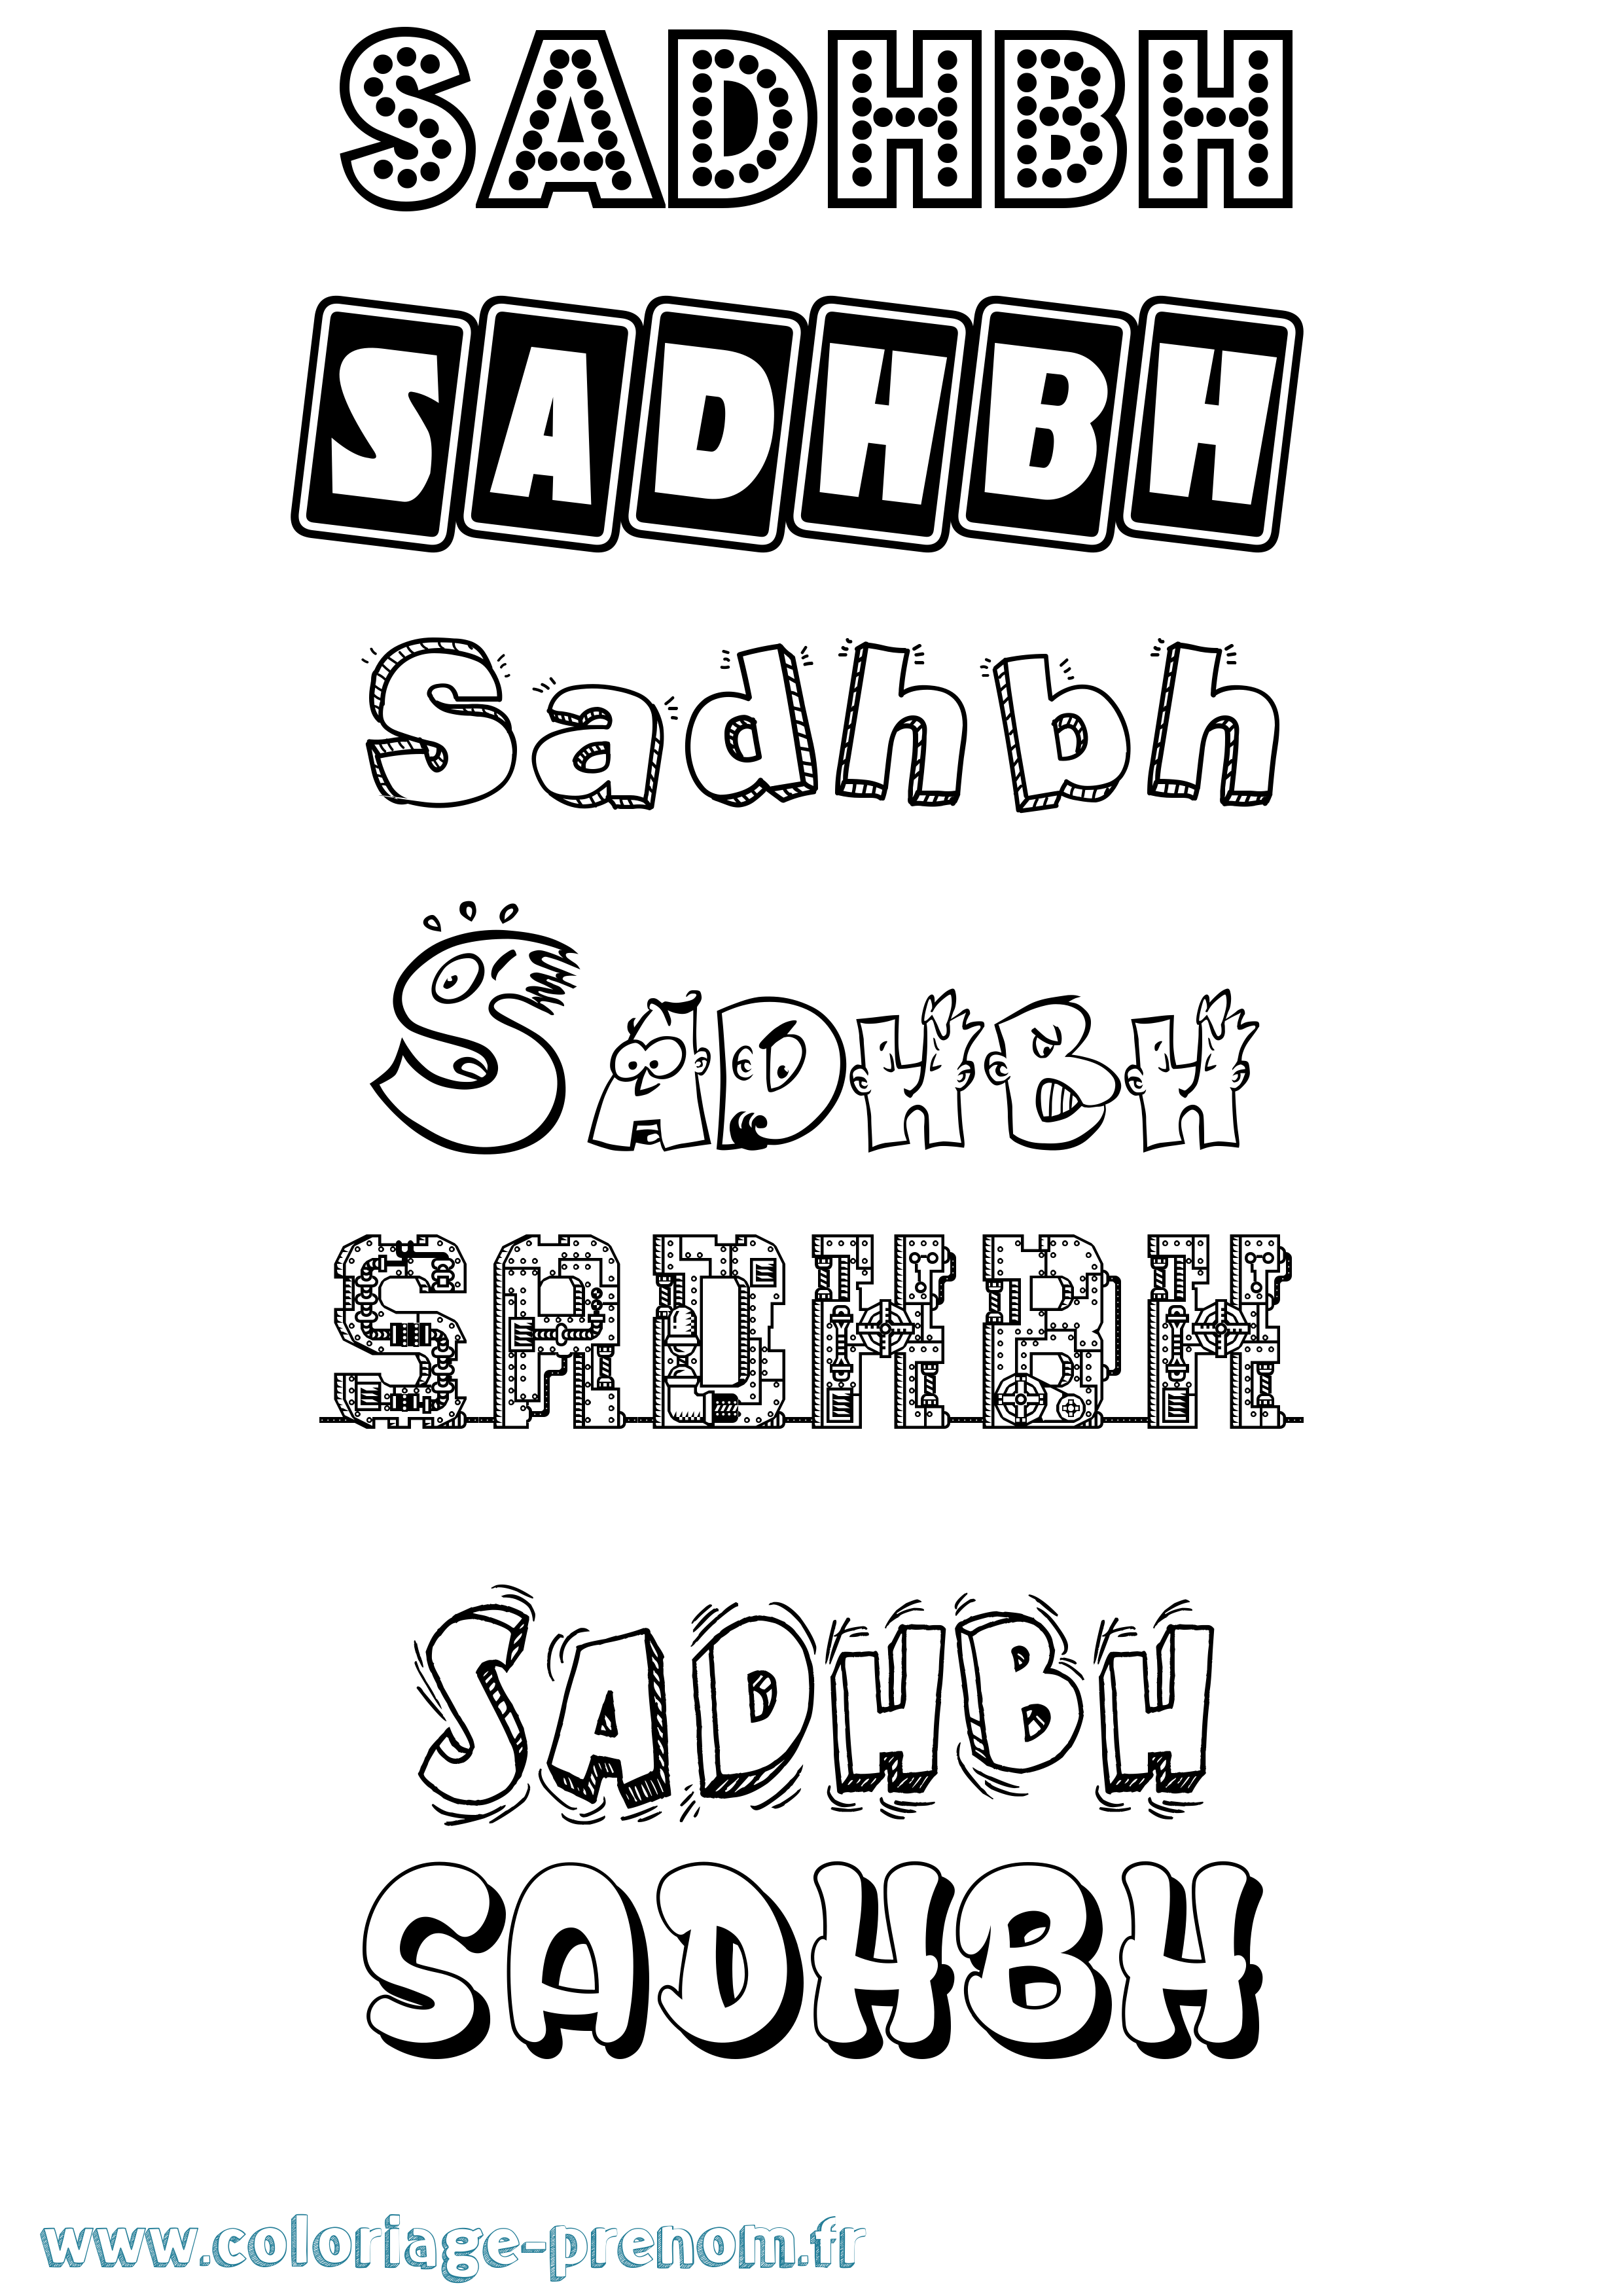 Coloriage prénom Sadhbh Fun